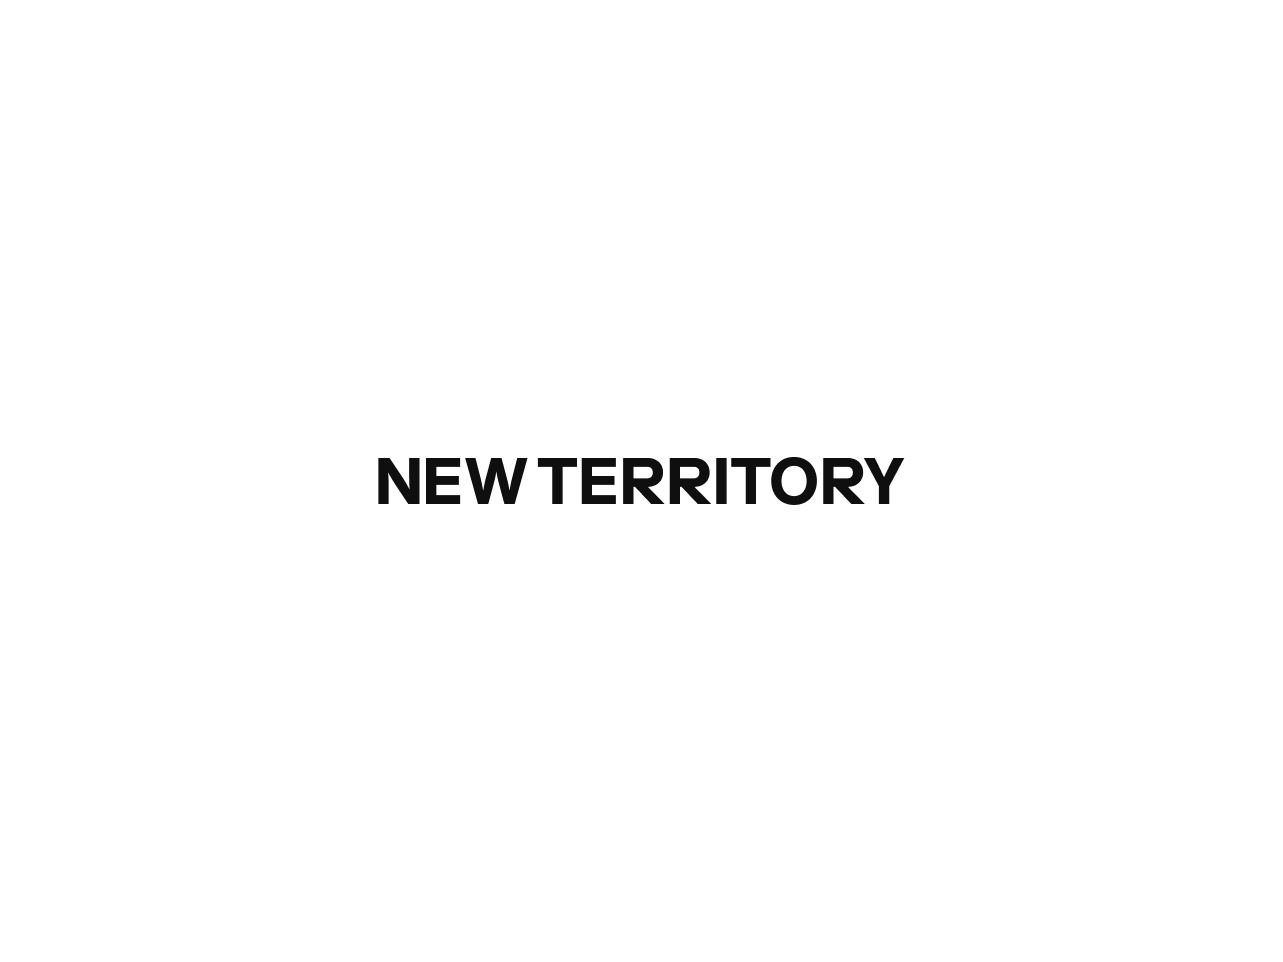 NewTerritory